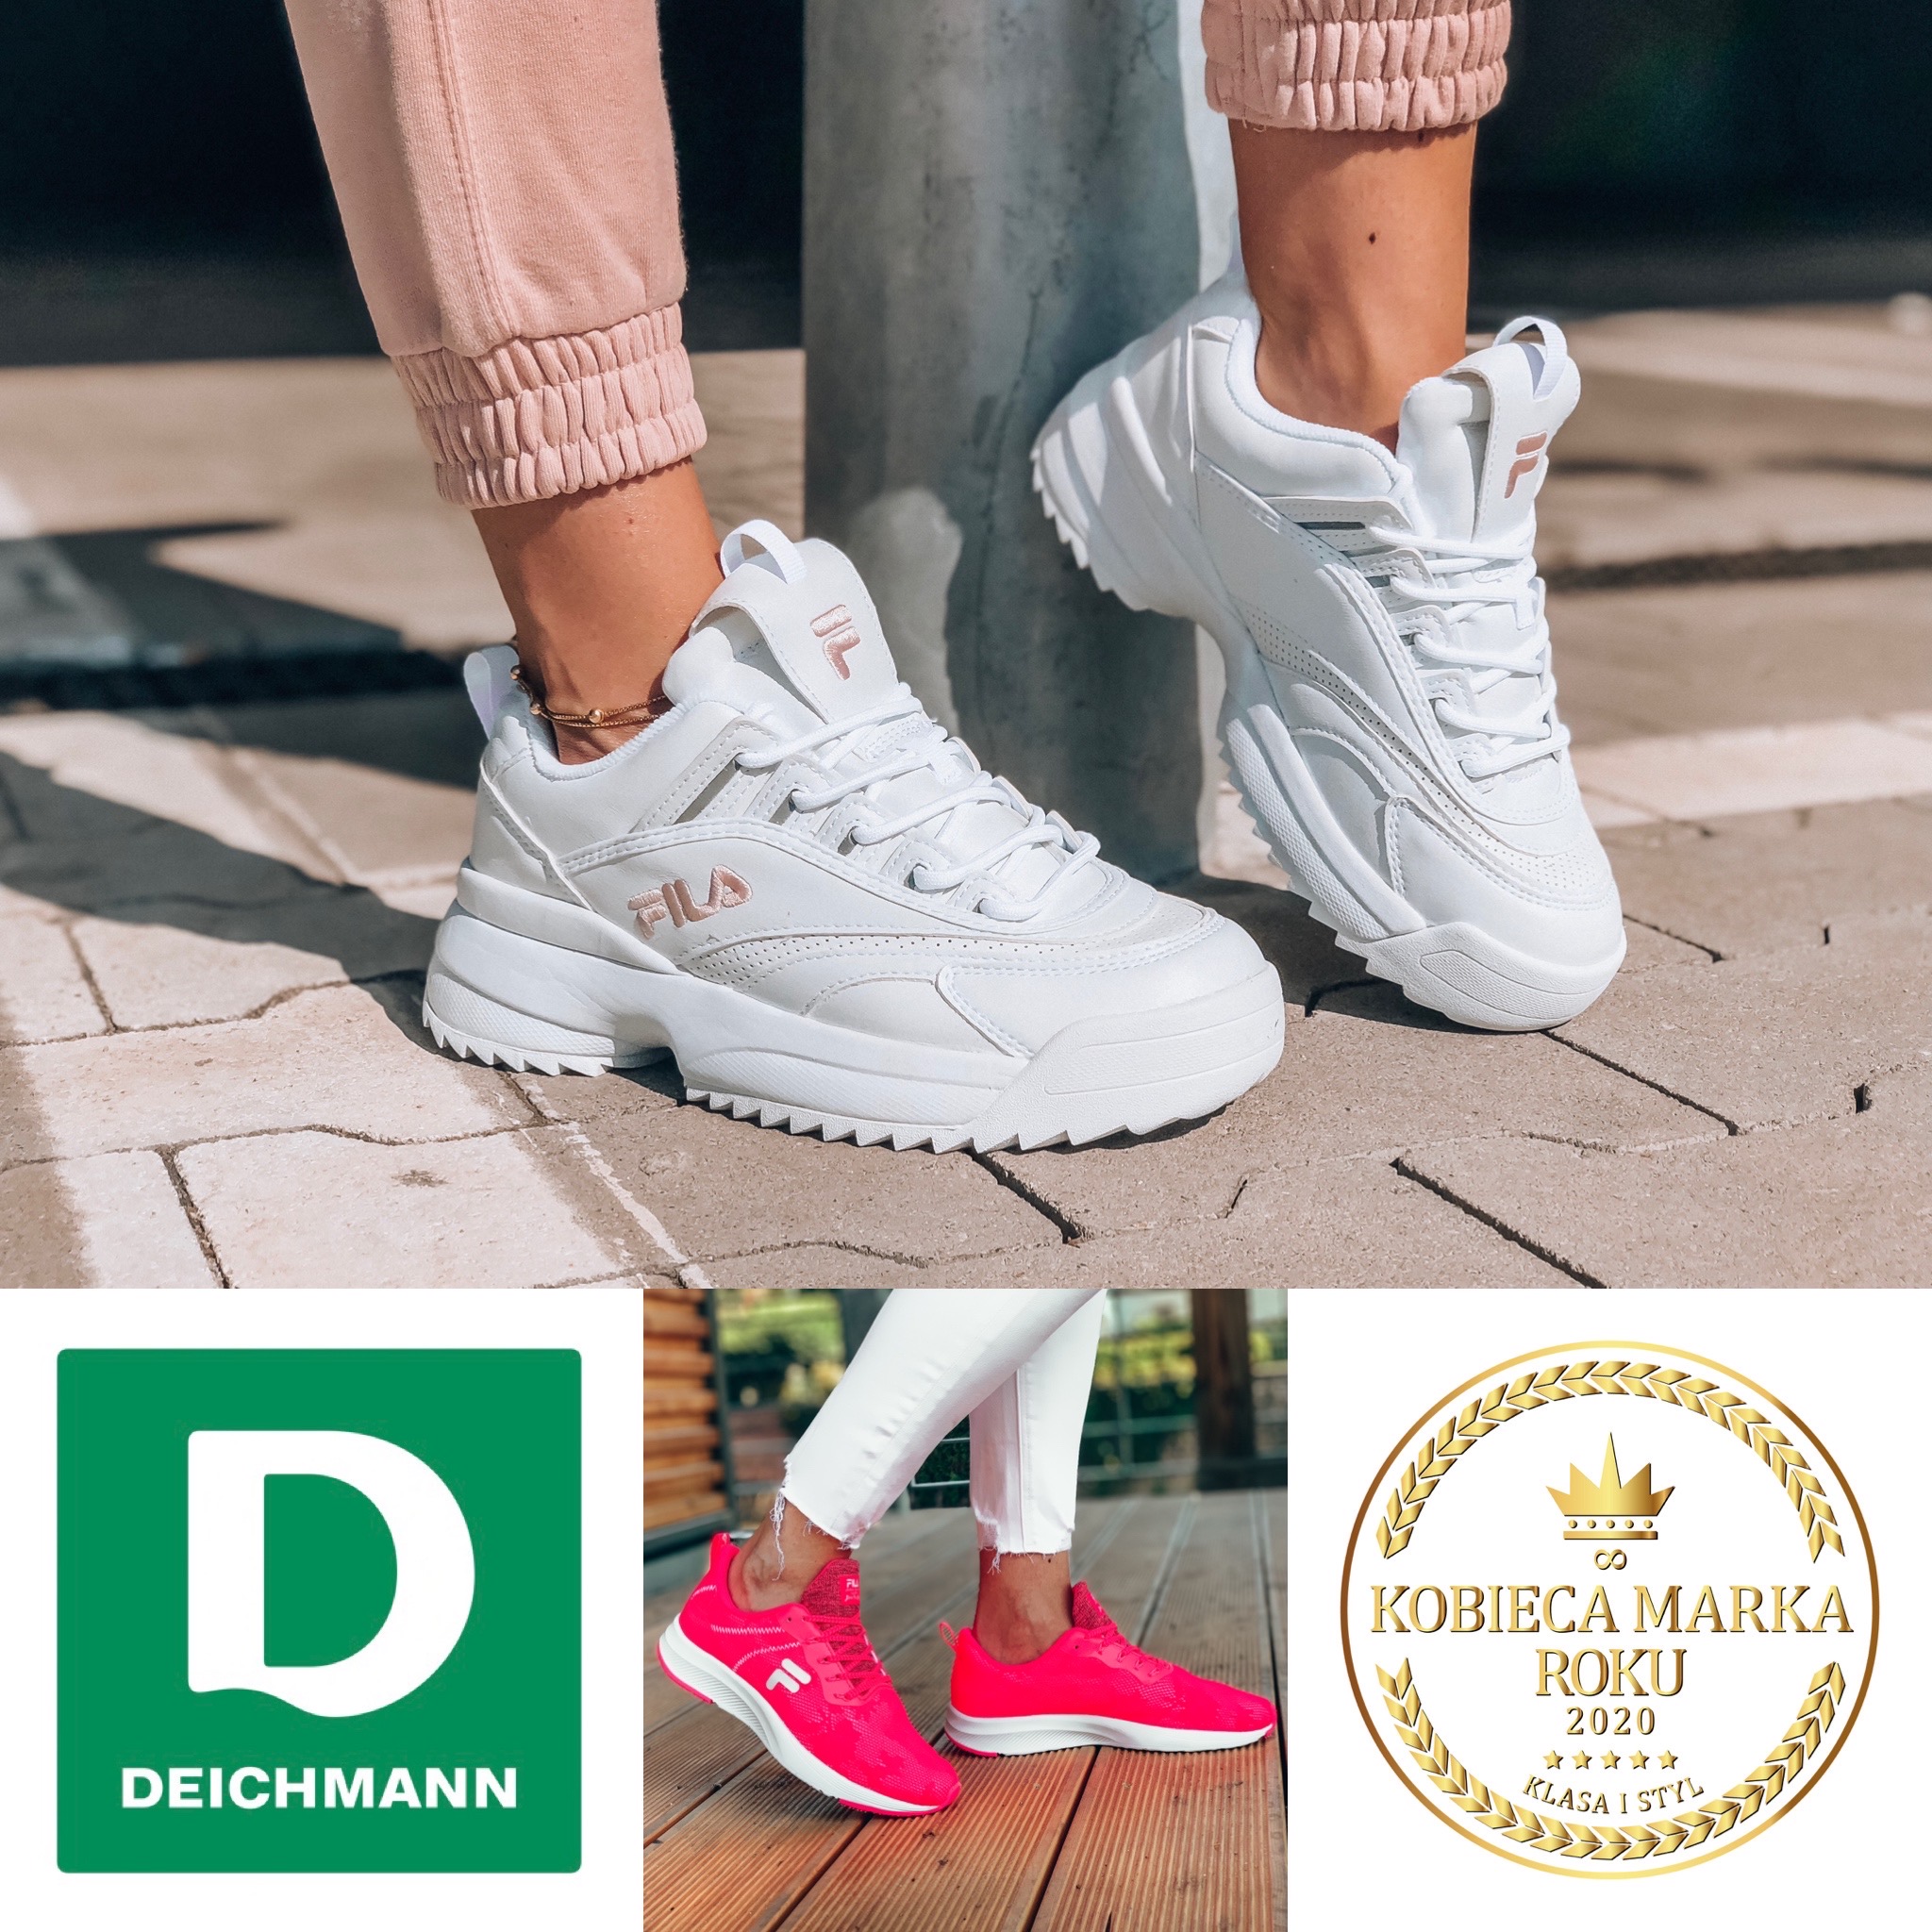 Fila for Deichmann – kultowa marka, ponadczasowy design, unikatowa tożsamość!